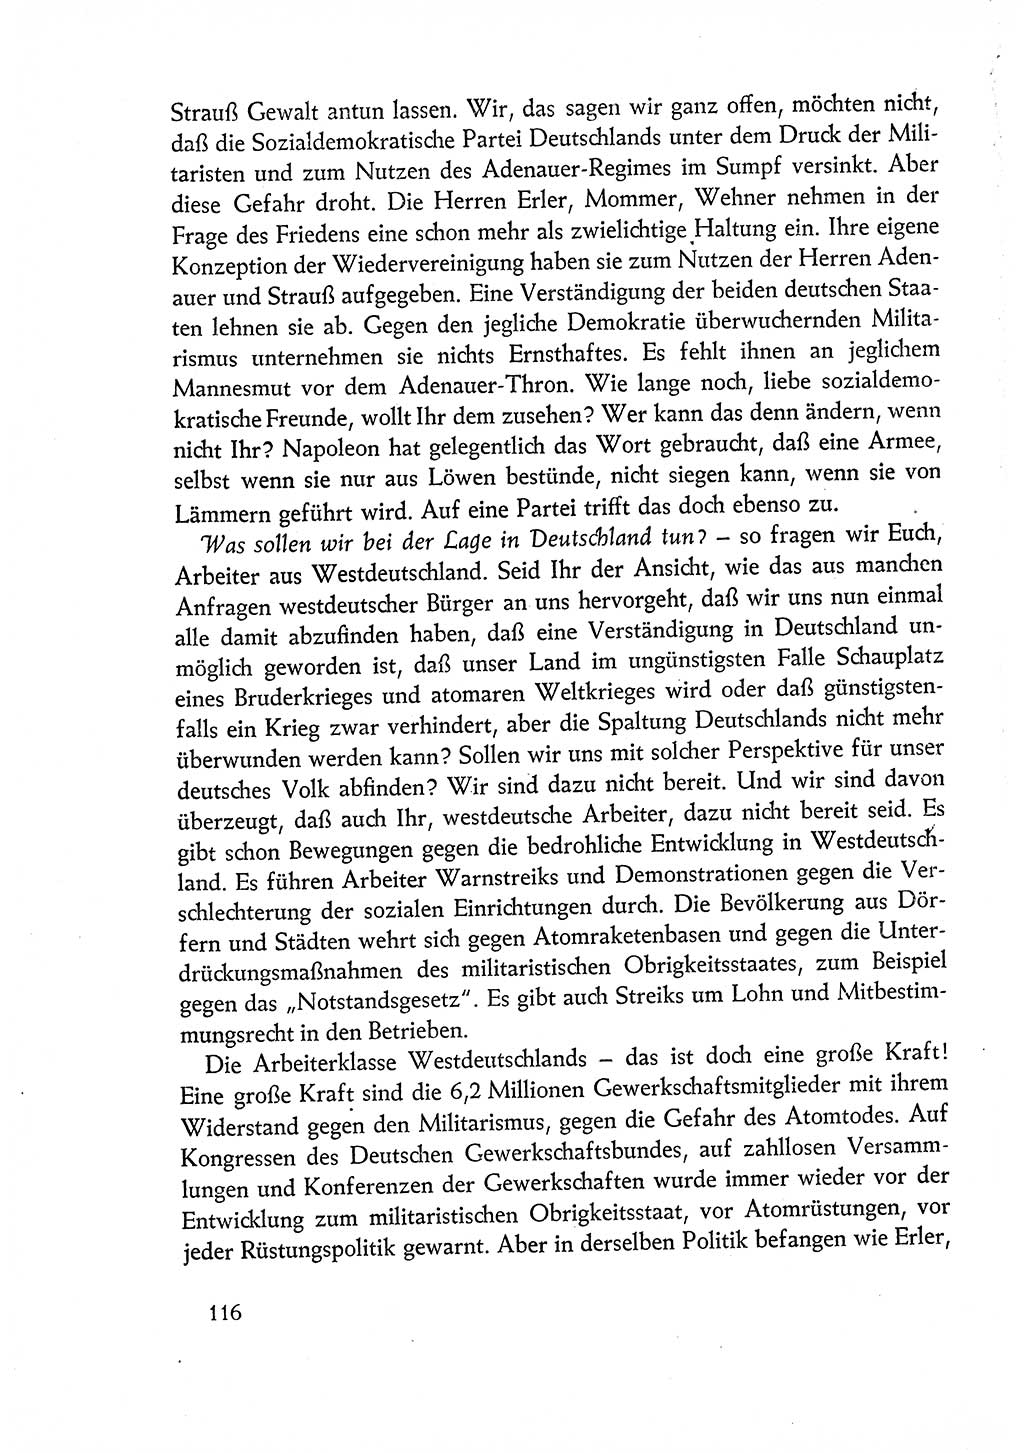 Dokumente der Sozialistischen Einheitspartei Deutschlands (SED) [Deutsche Demokratische Republik (DDR)] 1960-1961, Seite 116 (Dok. SED DDR 1960-1961, S. 116)